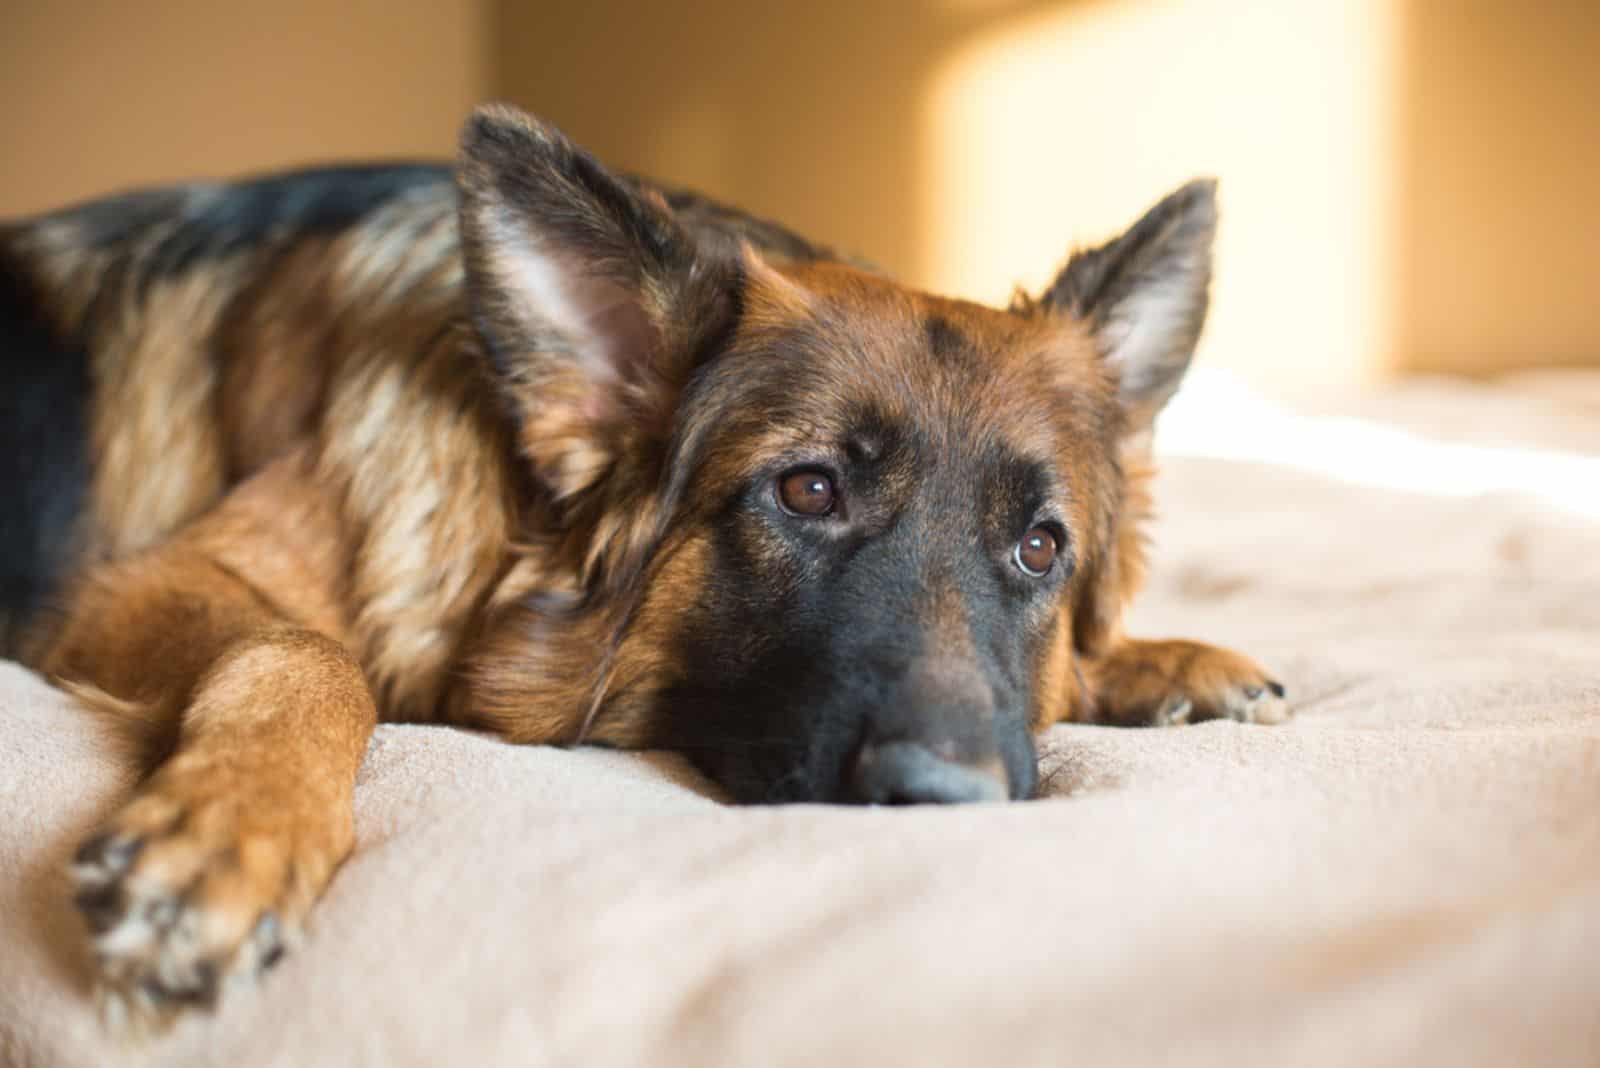 Cute German Shepherd on bed